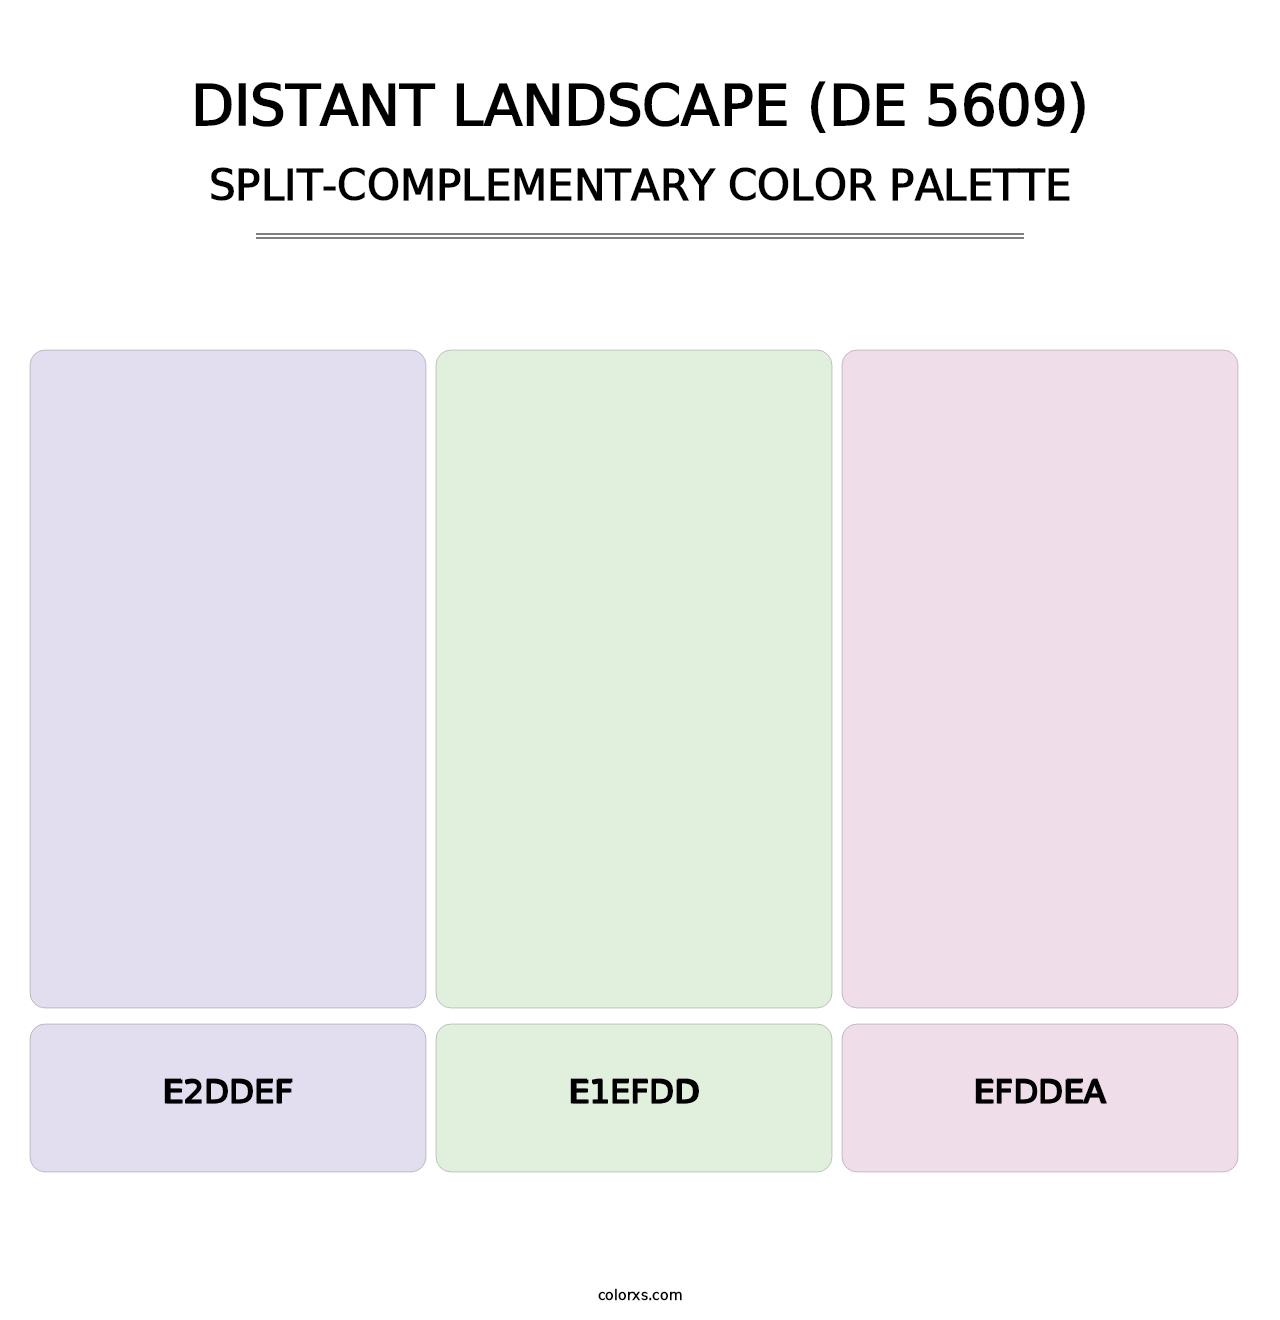 Distant Landscape (DE 5609) - Split-Complementary Color Palette